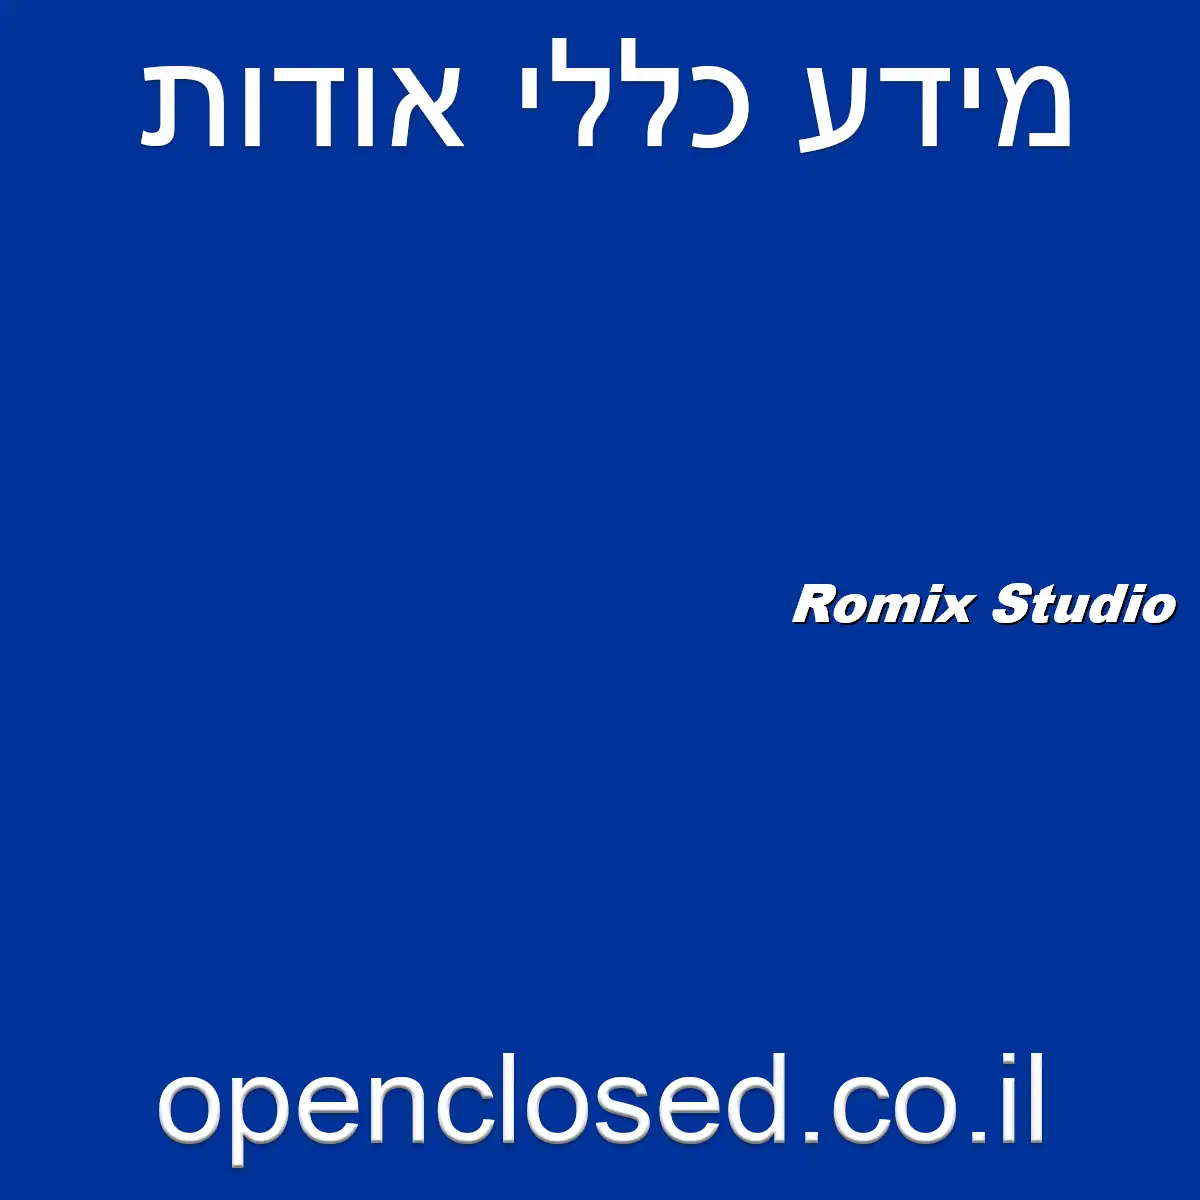 Romix Studio